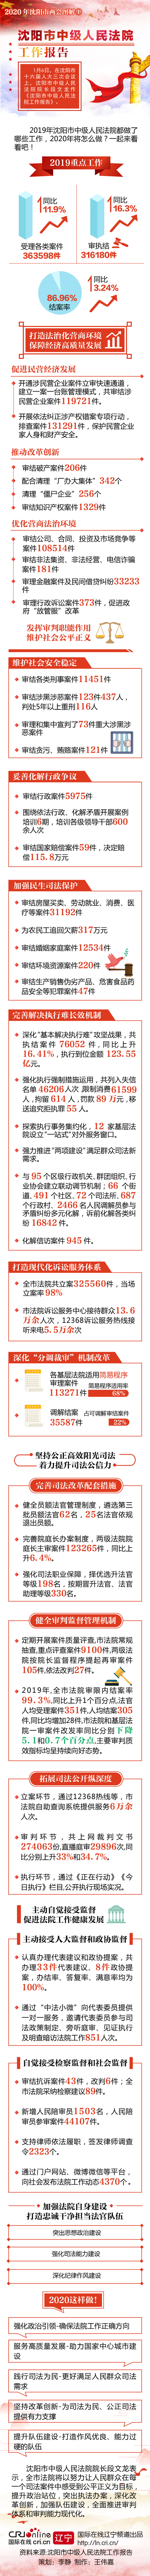 圖解|瀋陽市中級人民法院工作報告